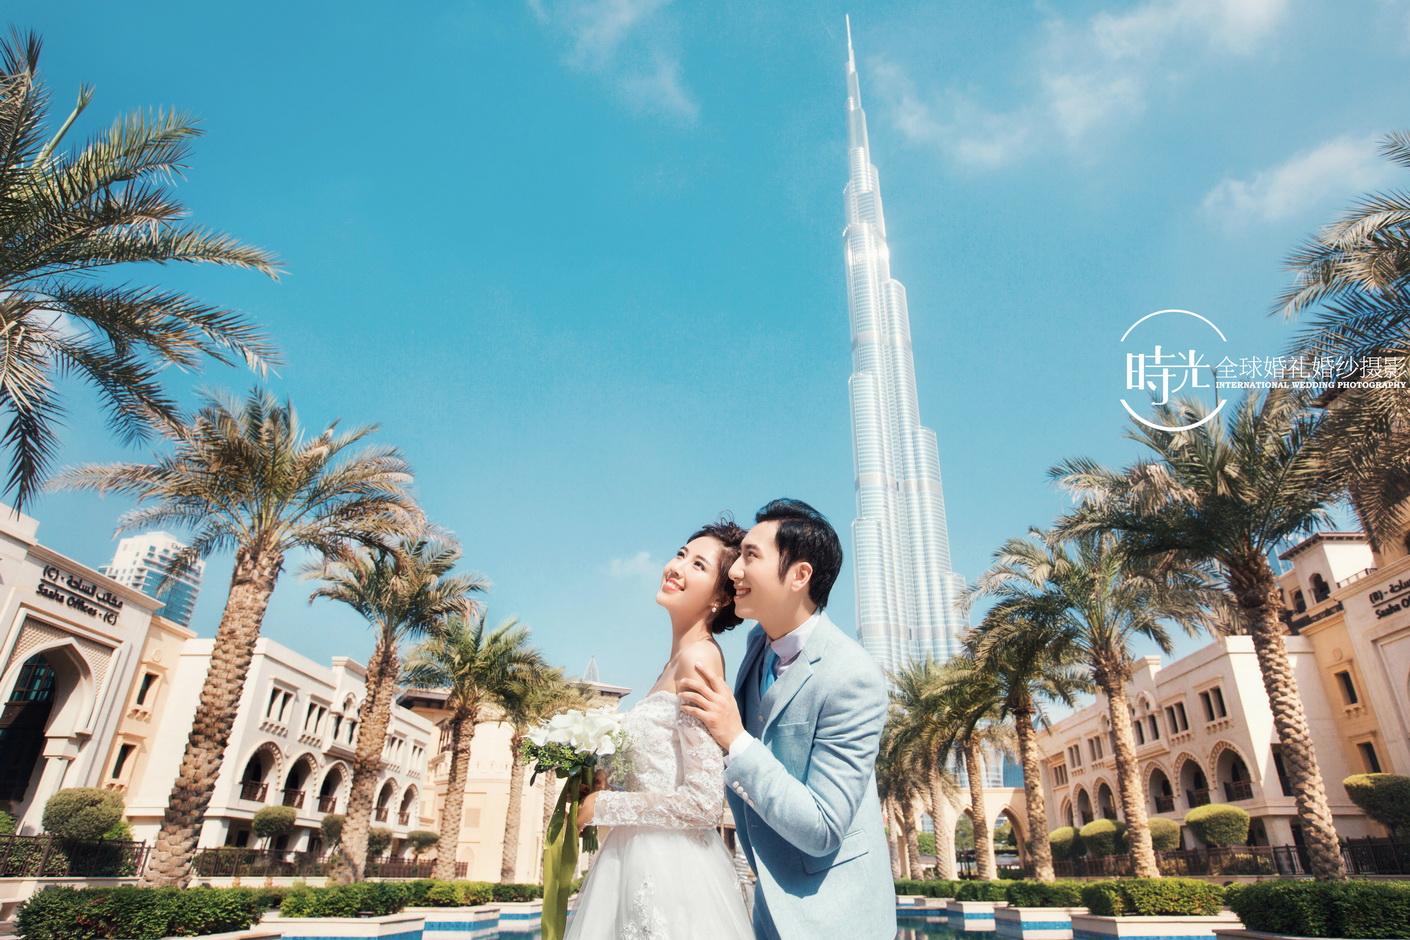 迪拜风 - 主题婚礼 - 婚礼图片 - 婚礼风尚